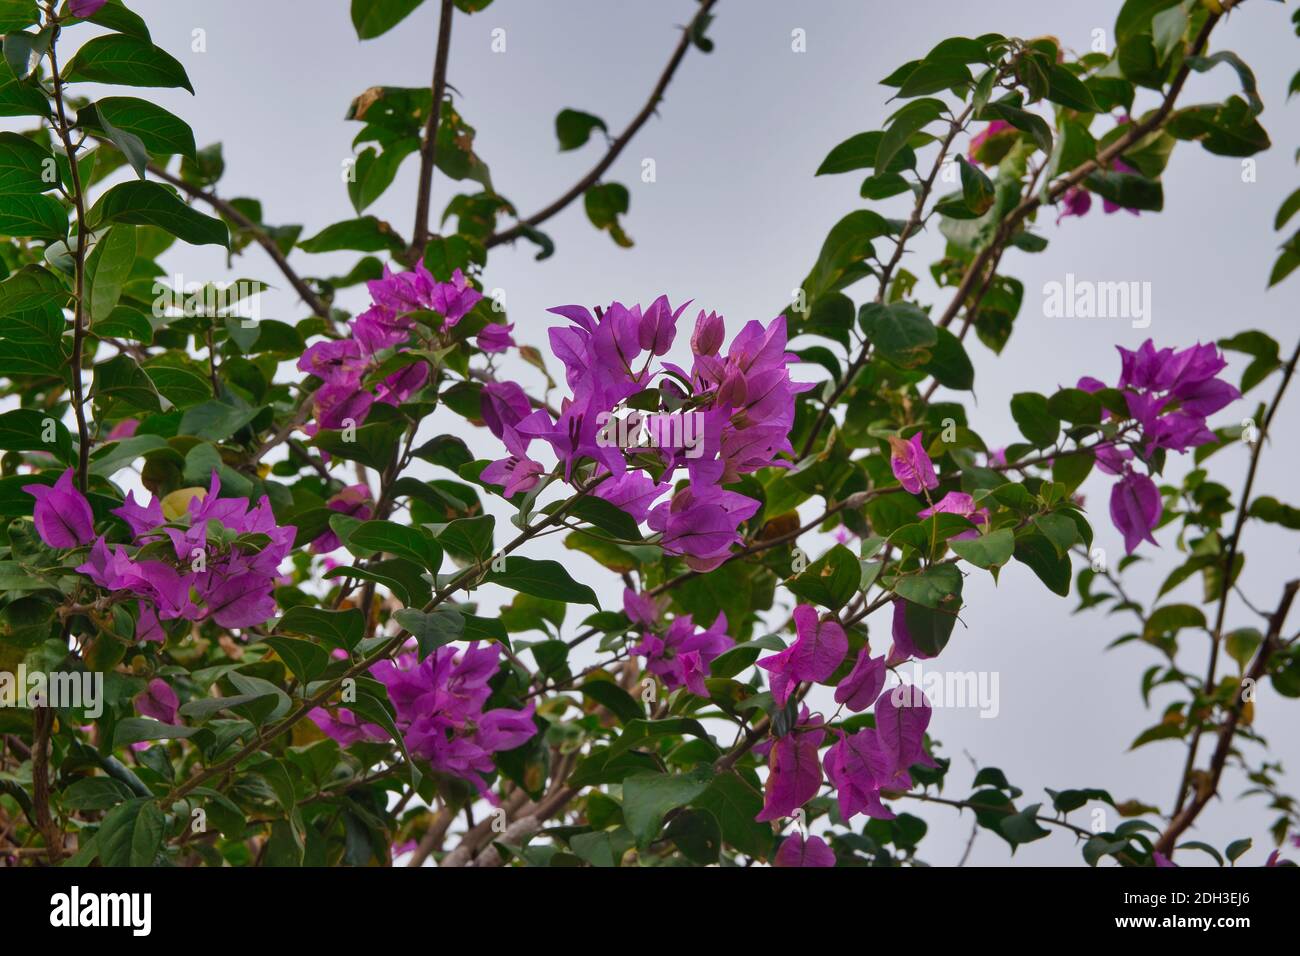 Image des plantes de bougainvilliers dans les îles Canaries, Espagne Banque D'Images